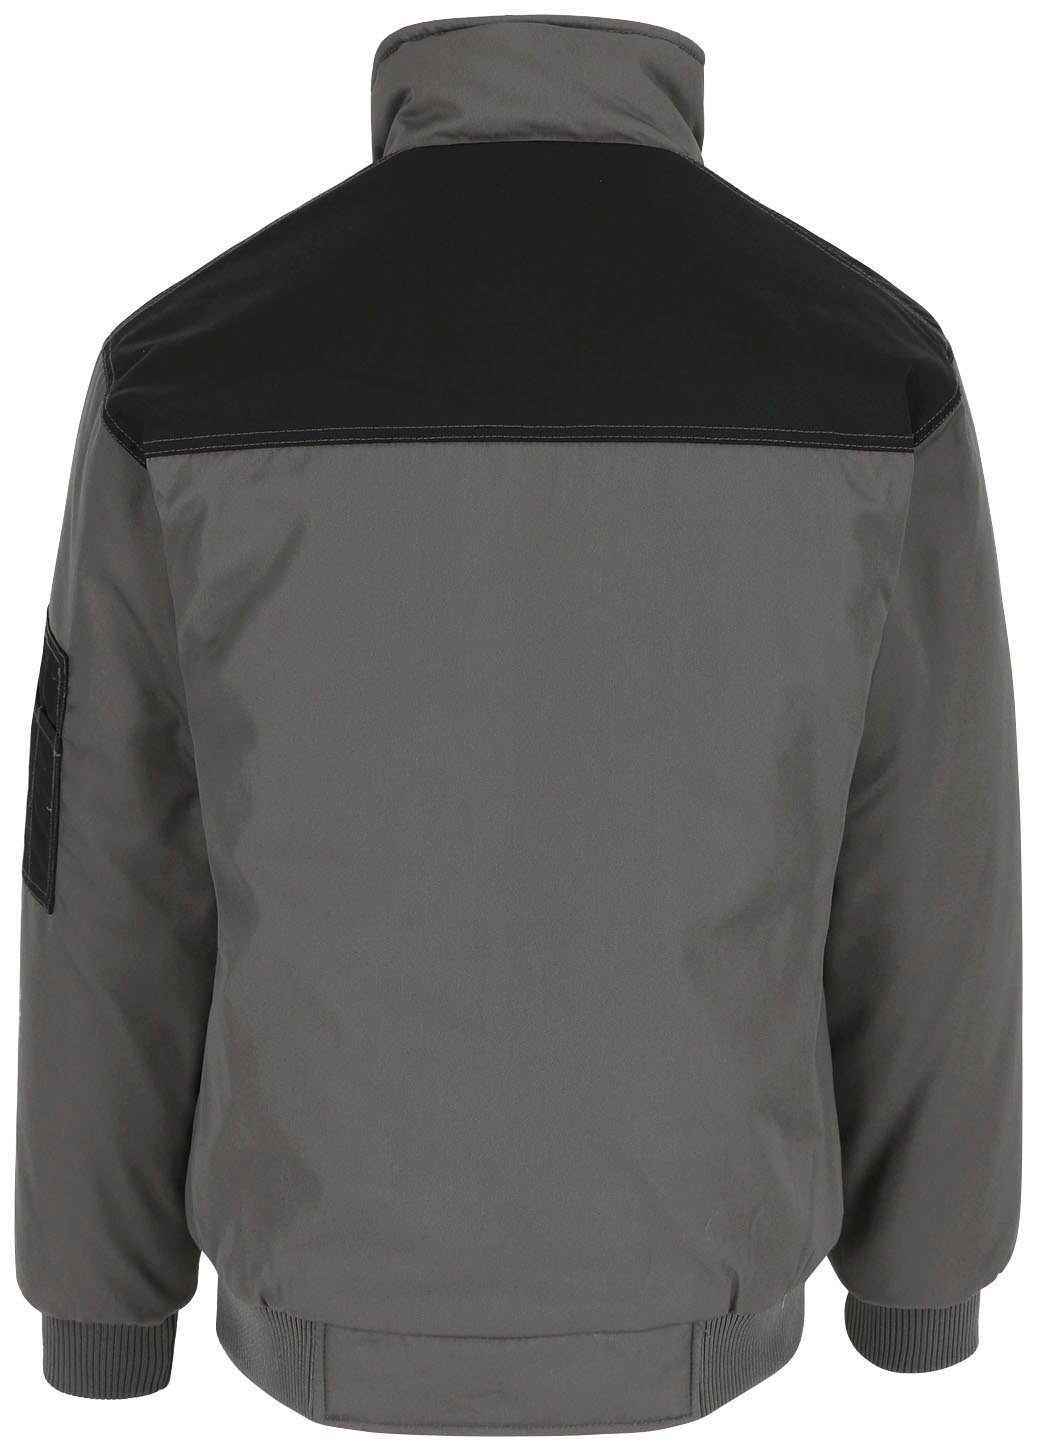 Jacke Farben Taschen, Typhon Wasserabweisend mit grau Fleece-Kragen, viele Arbeitsjacke Herock viele robust,